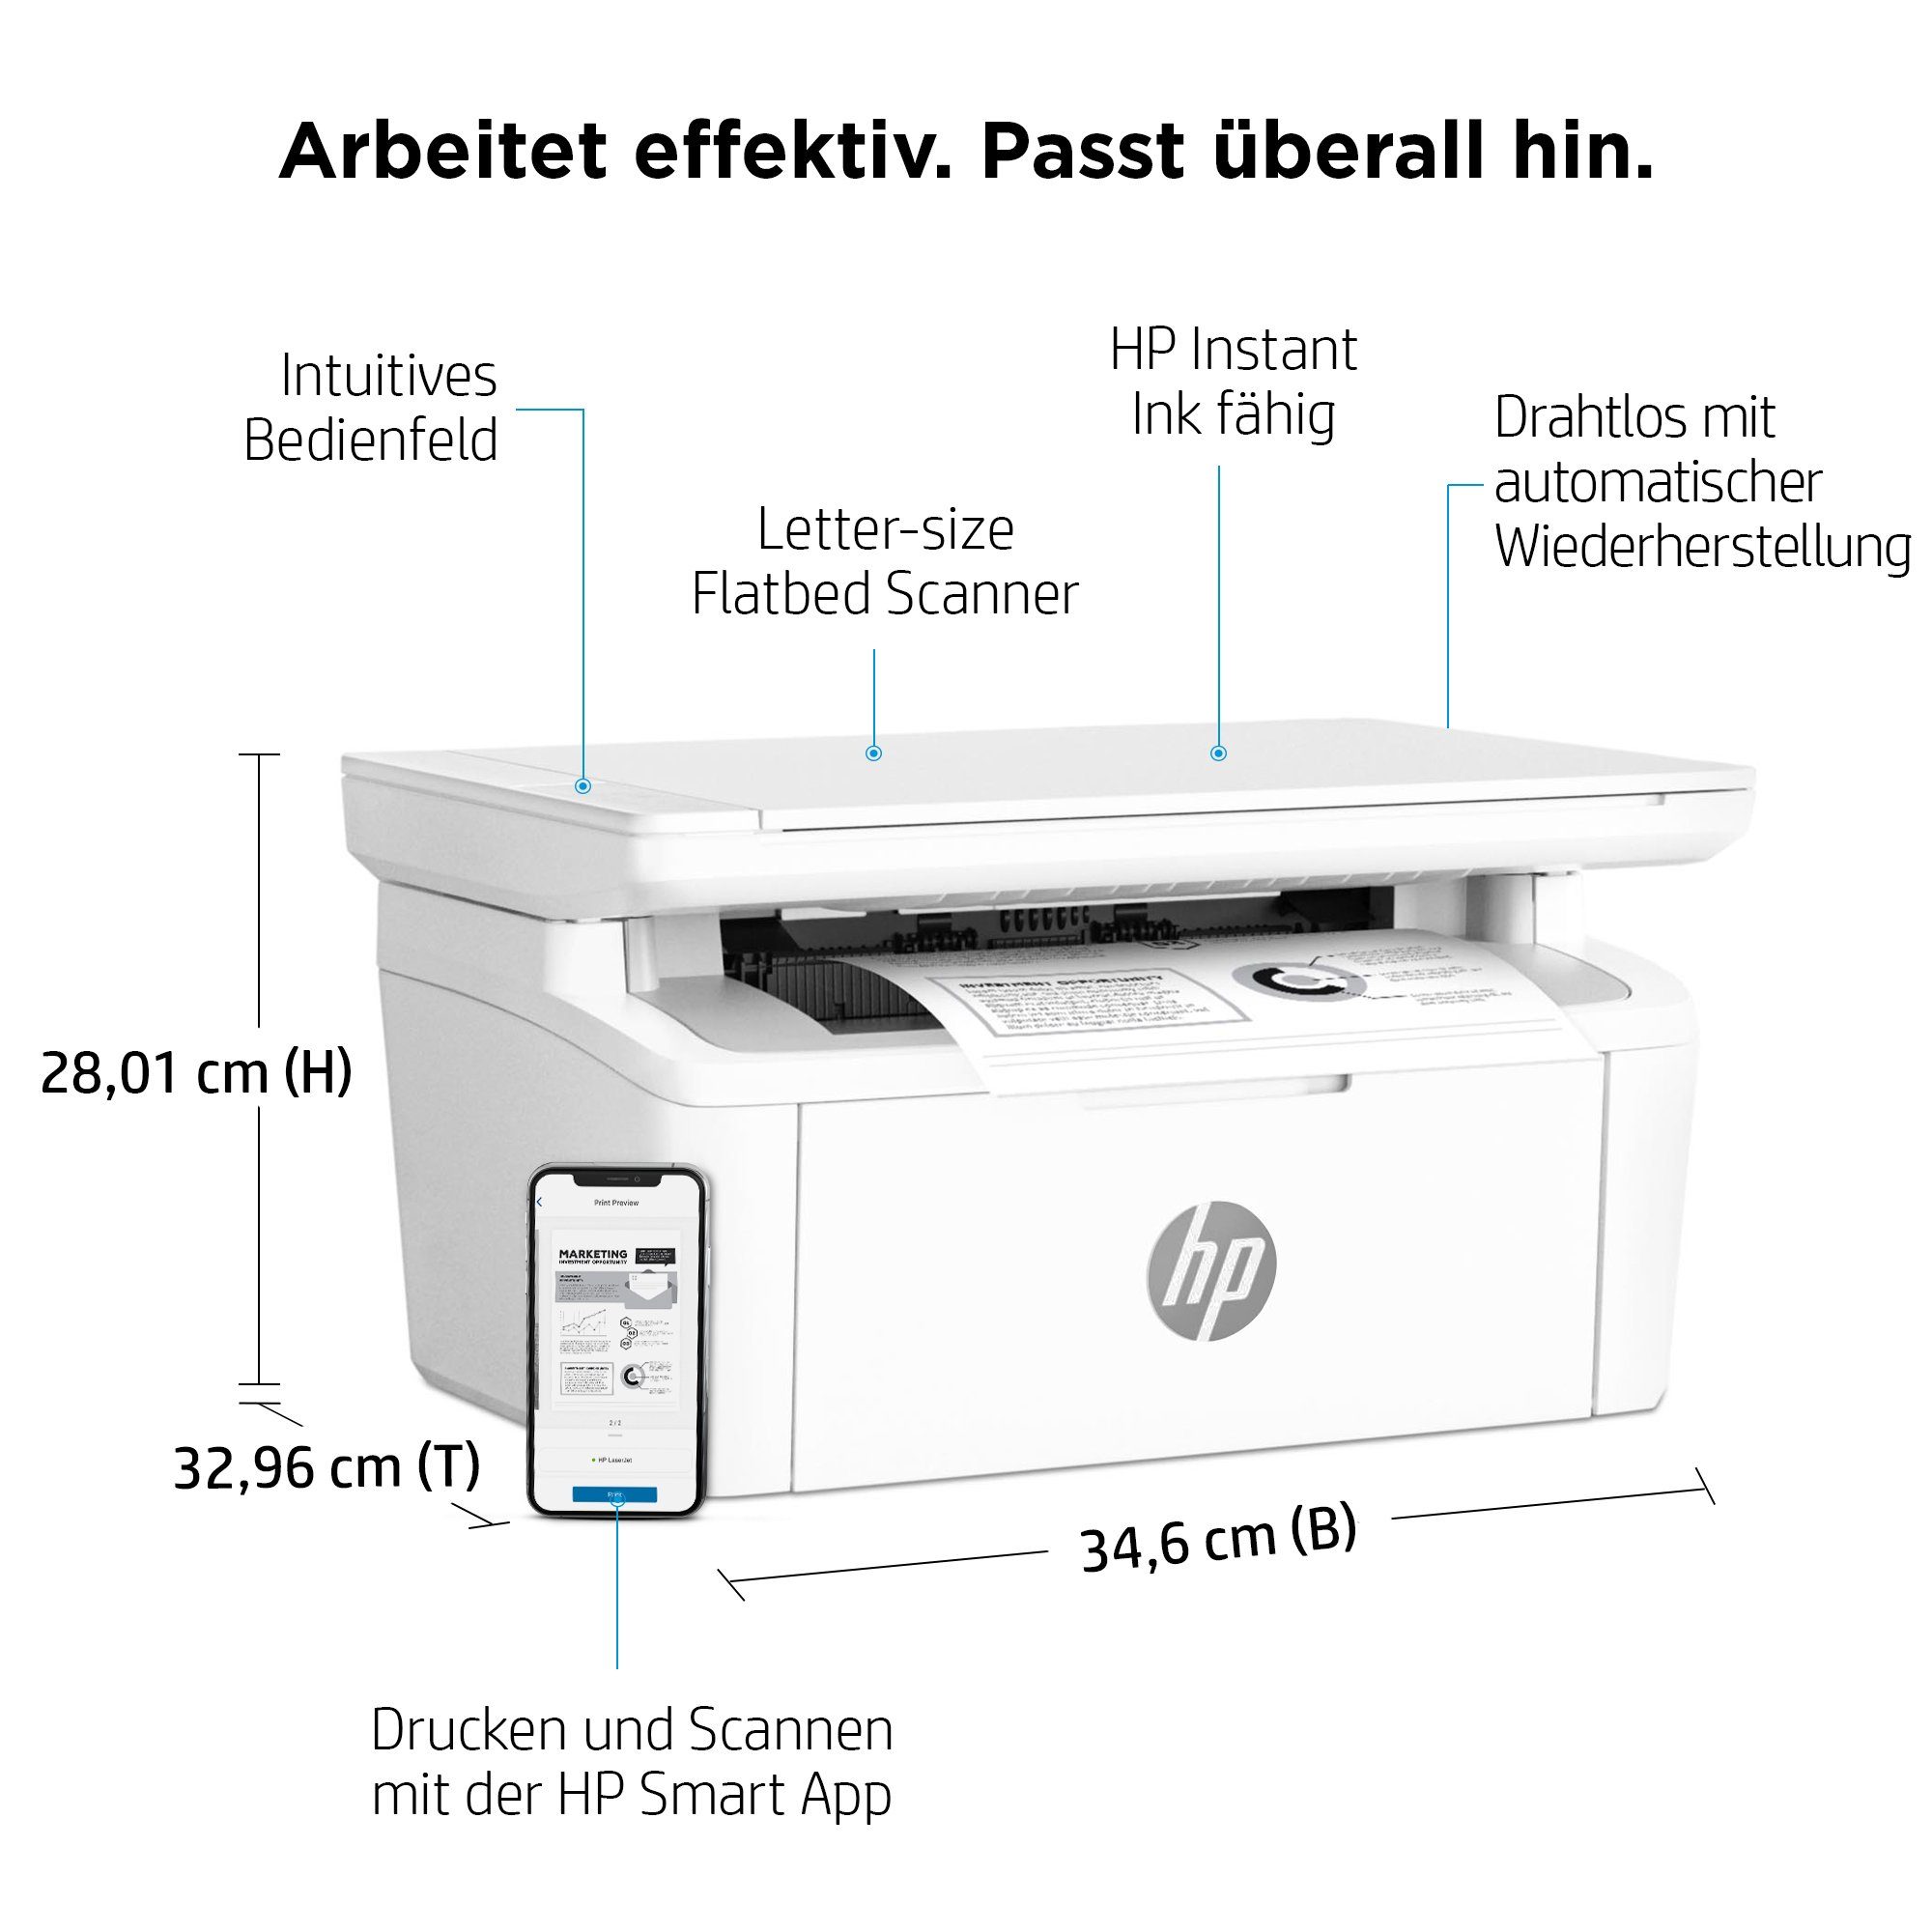 Multifunktionsdrucker, kompatibel) Ink HP+ HP (Bluetooth, LaserJet (Wi-Fi), Drucker MFP WLAN Instant M140w